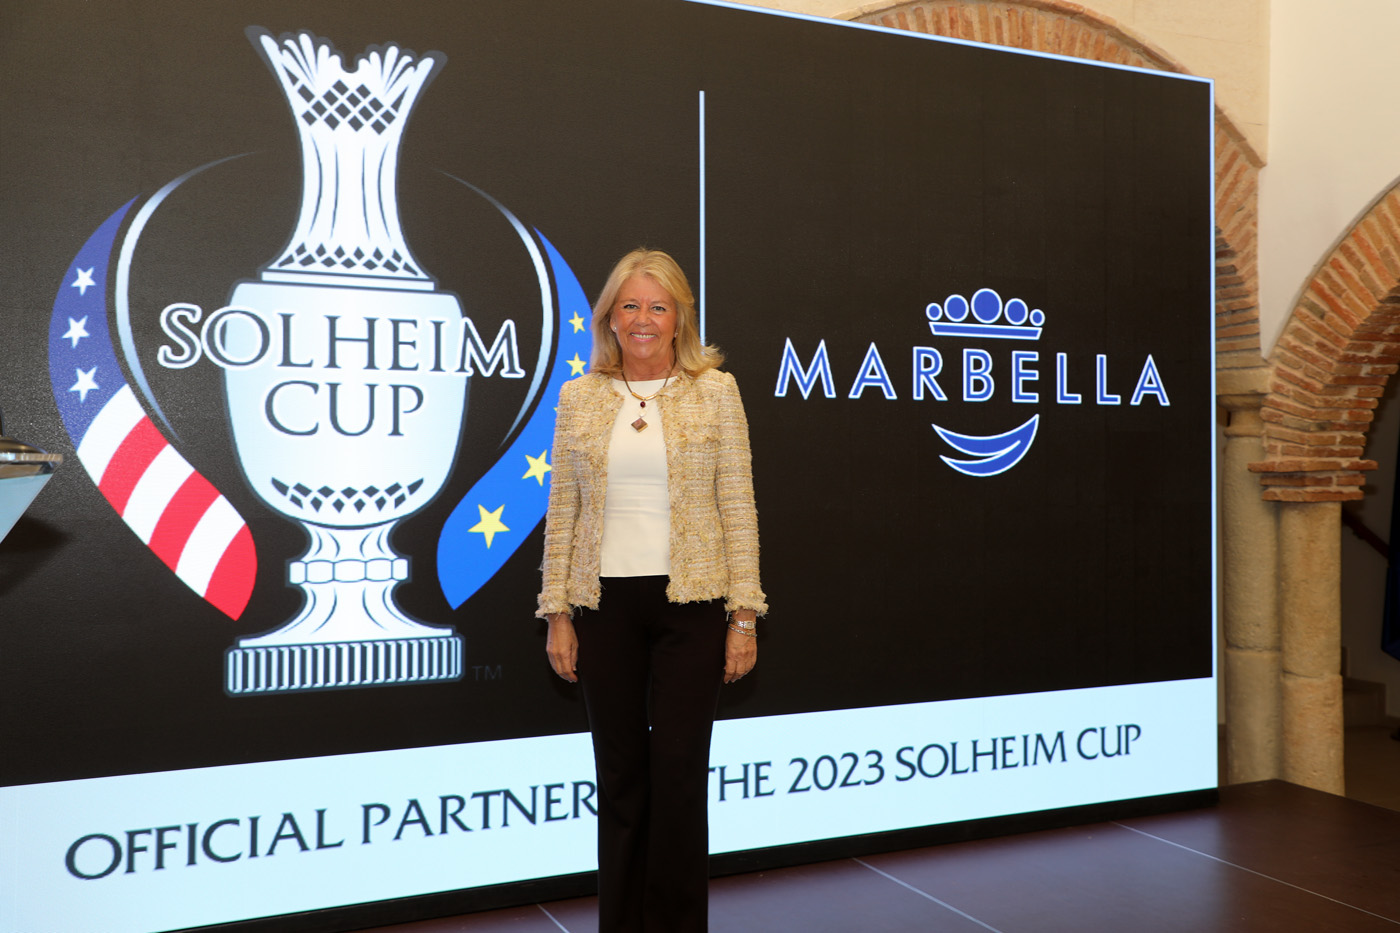 La ciudad exhibirá en FITUR su fortaleza como destino de golf en el año de la Solheim Cup y presentará una nueva campaña con el lema ‘Marbella, el lugar que siempre soñaste para visitar, para quedarte’